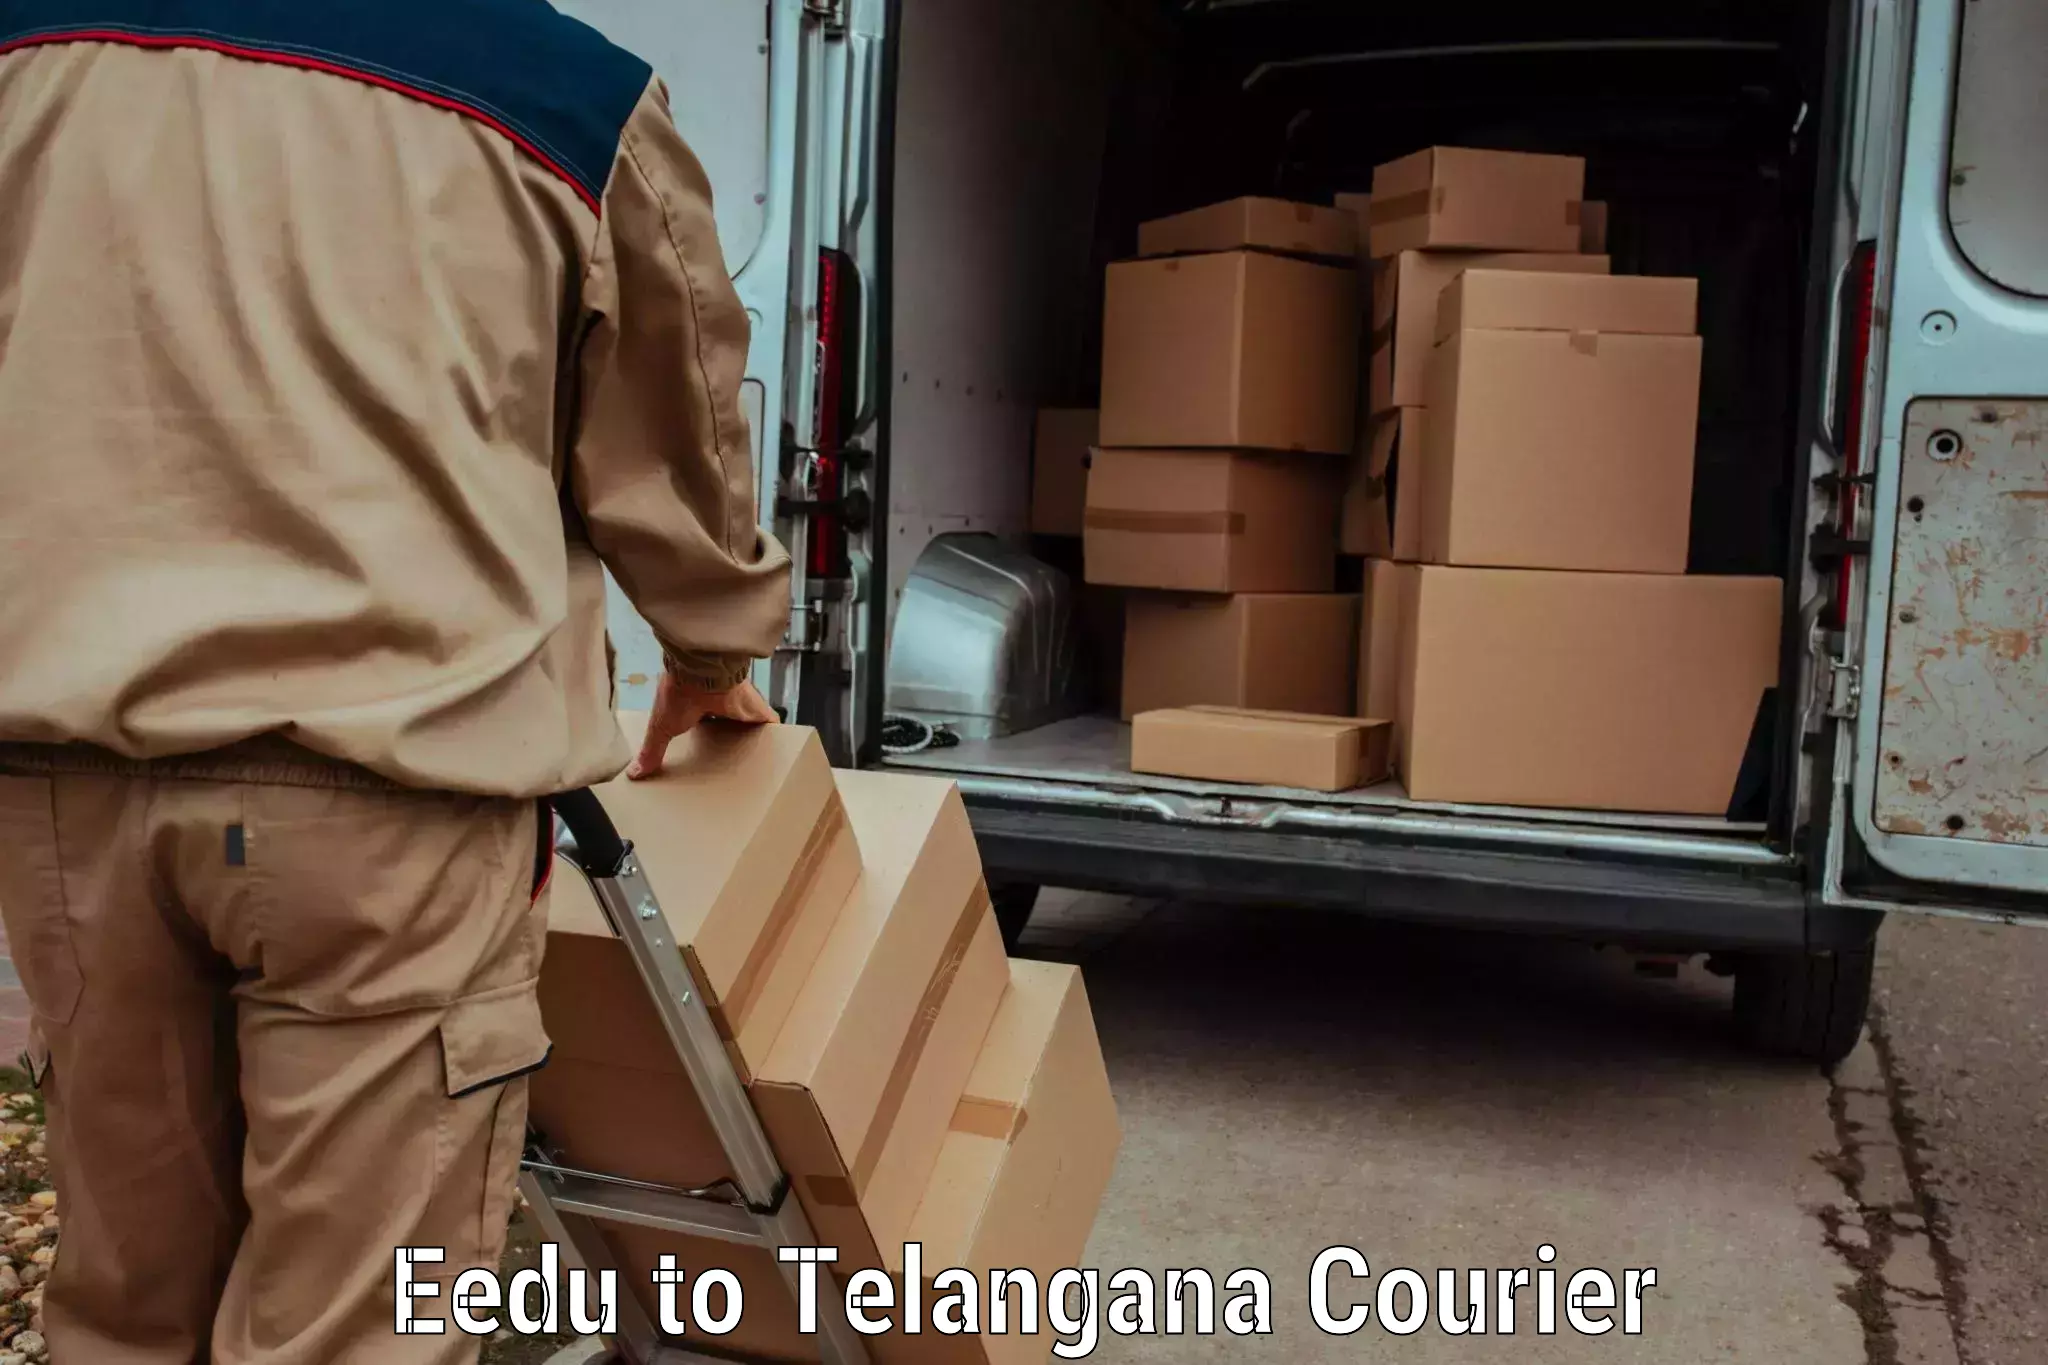 Nationwide shipping coverage Eedu to Ibrahimpatnam